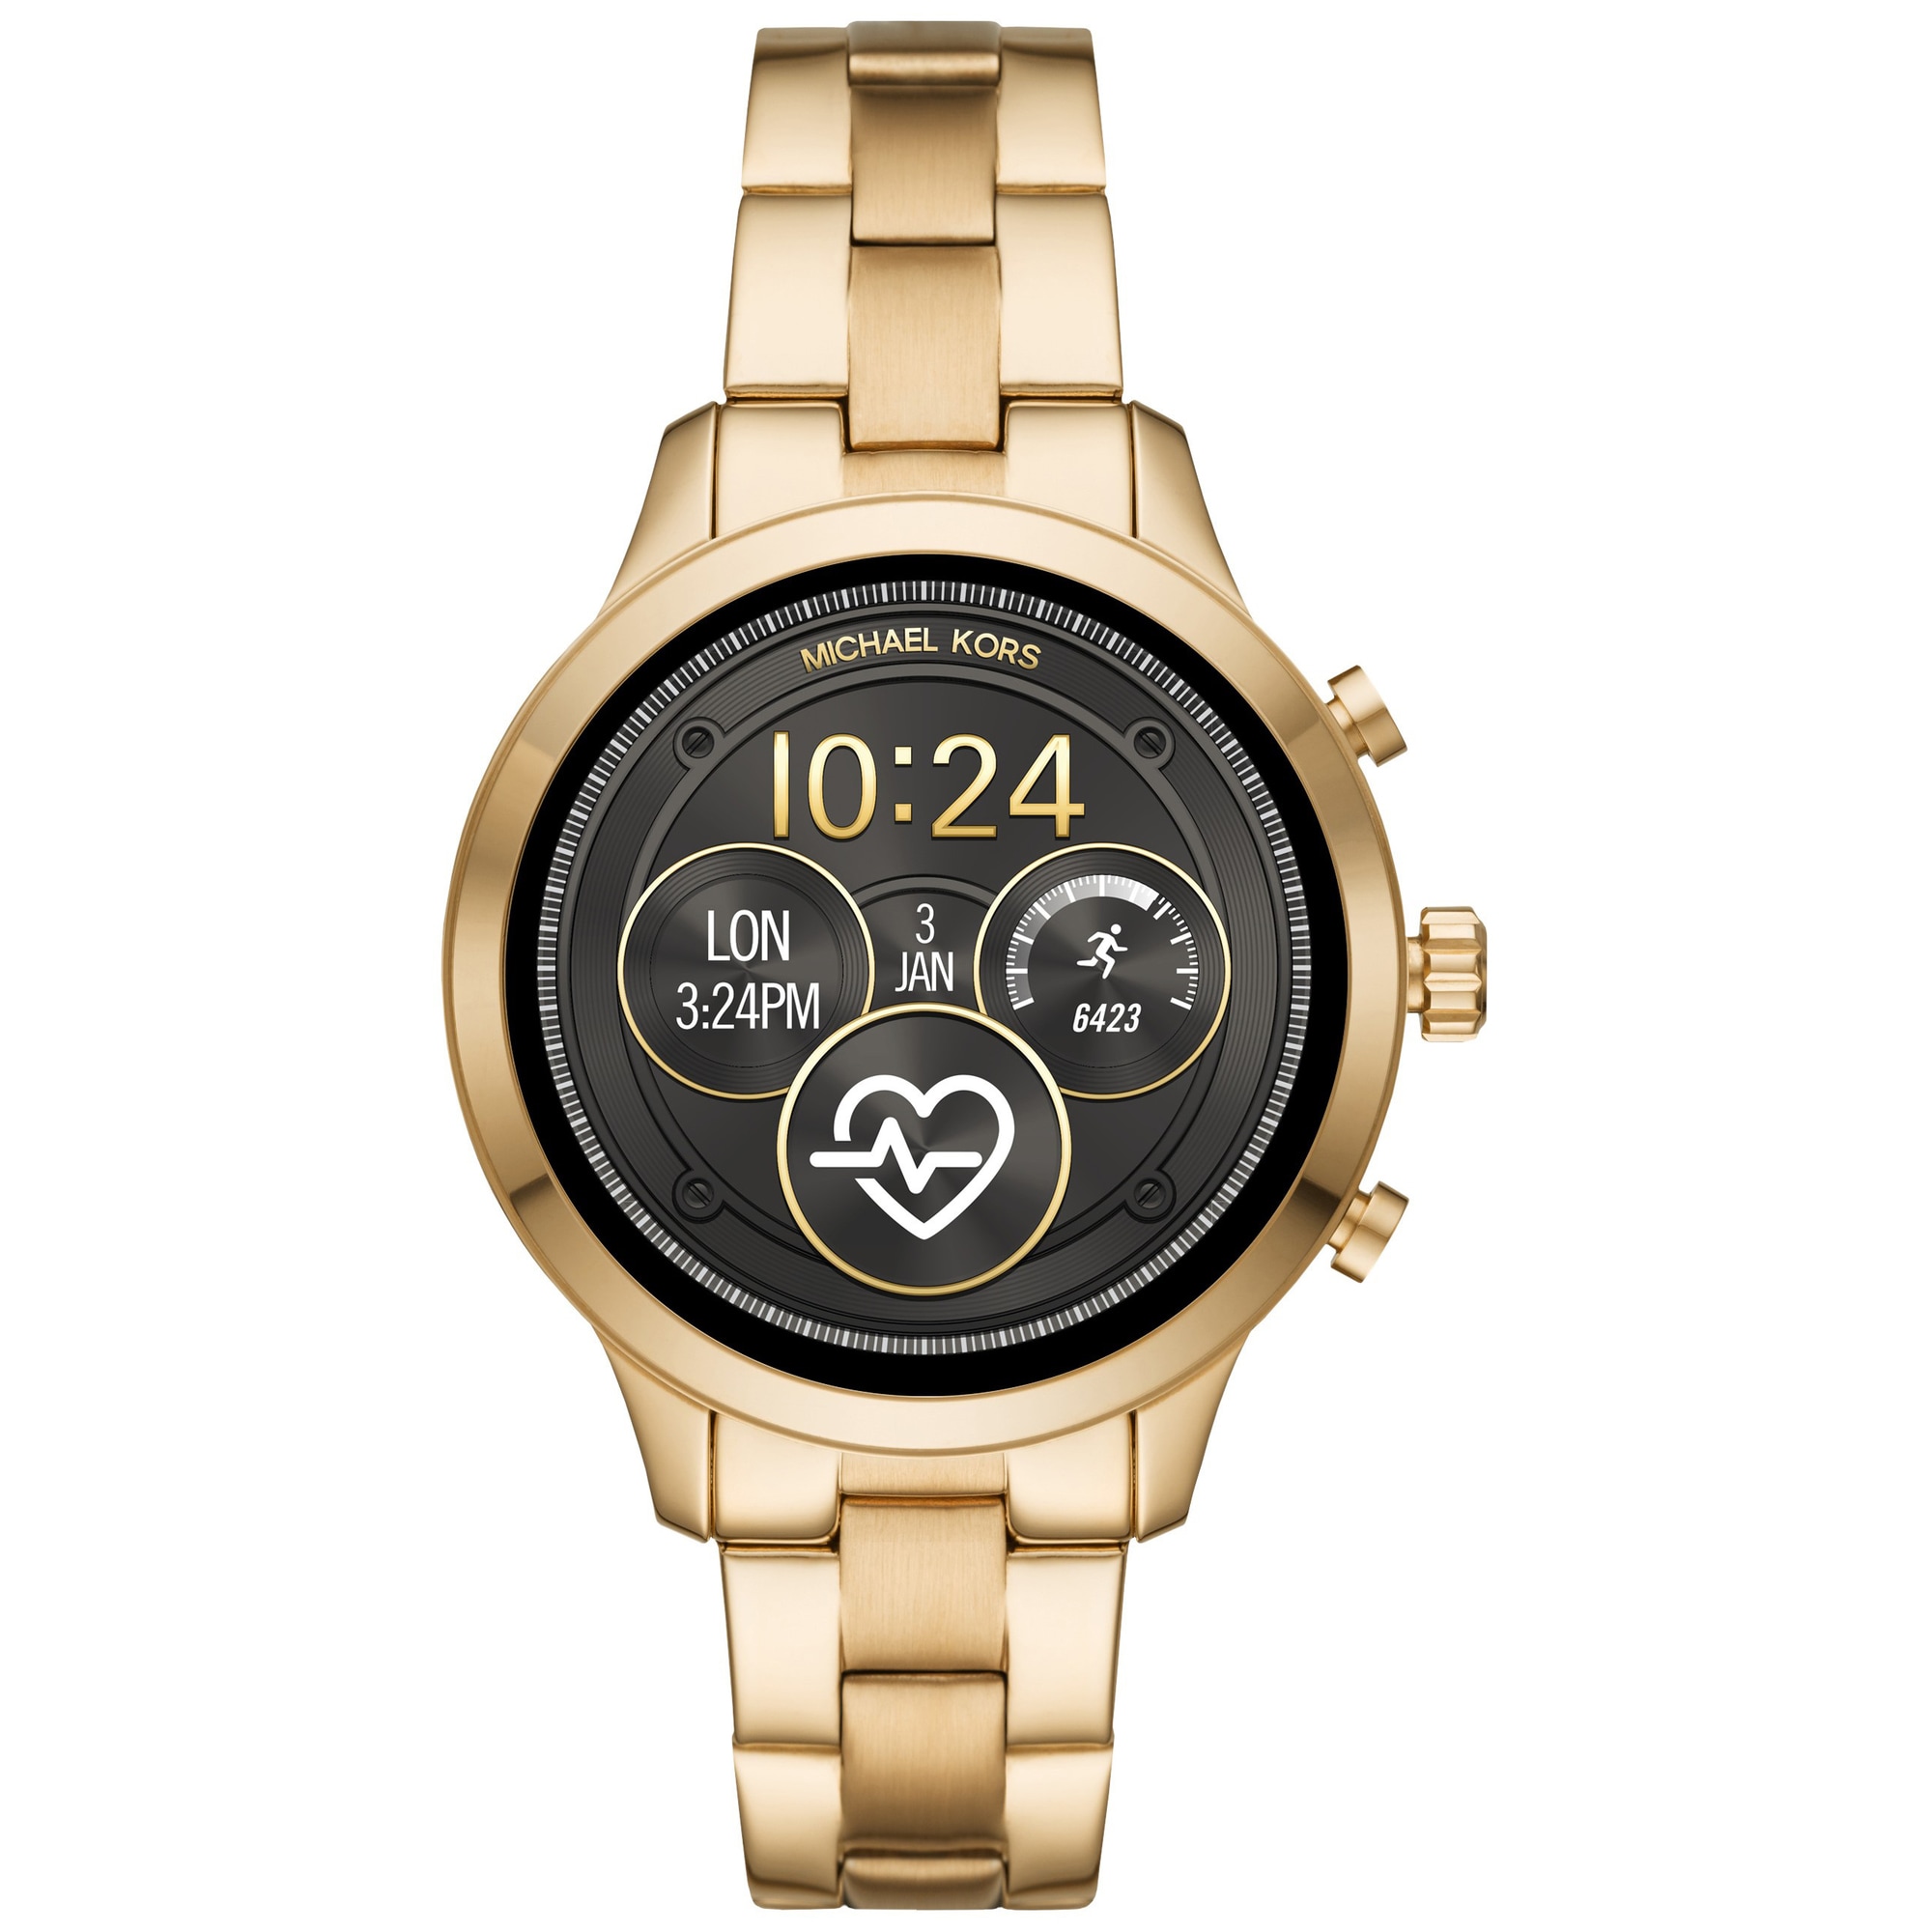 Michael Kors smartwatch gold